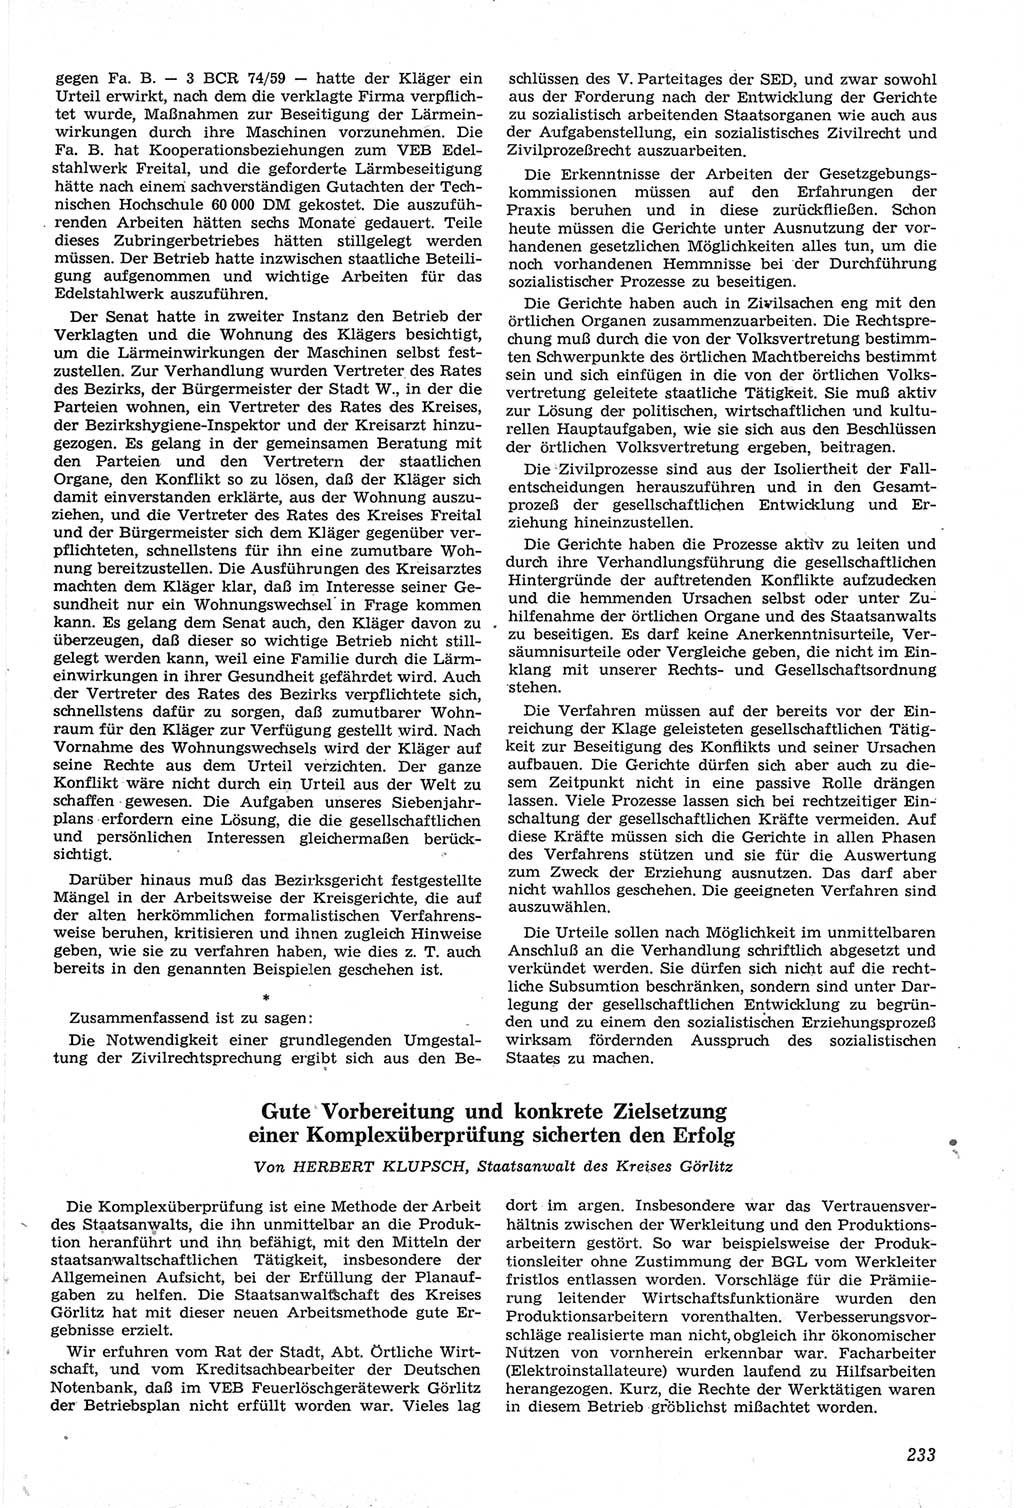 Neue Justiz (NJ), Zeitschrift für Recht und Rechtswissenschaft [Deutsche Demokratische Republik (DDR)], 14. Jahrgang 1960, Seite 233 (NJ DDR 1960, S. 233)